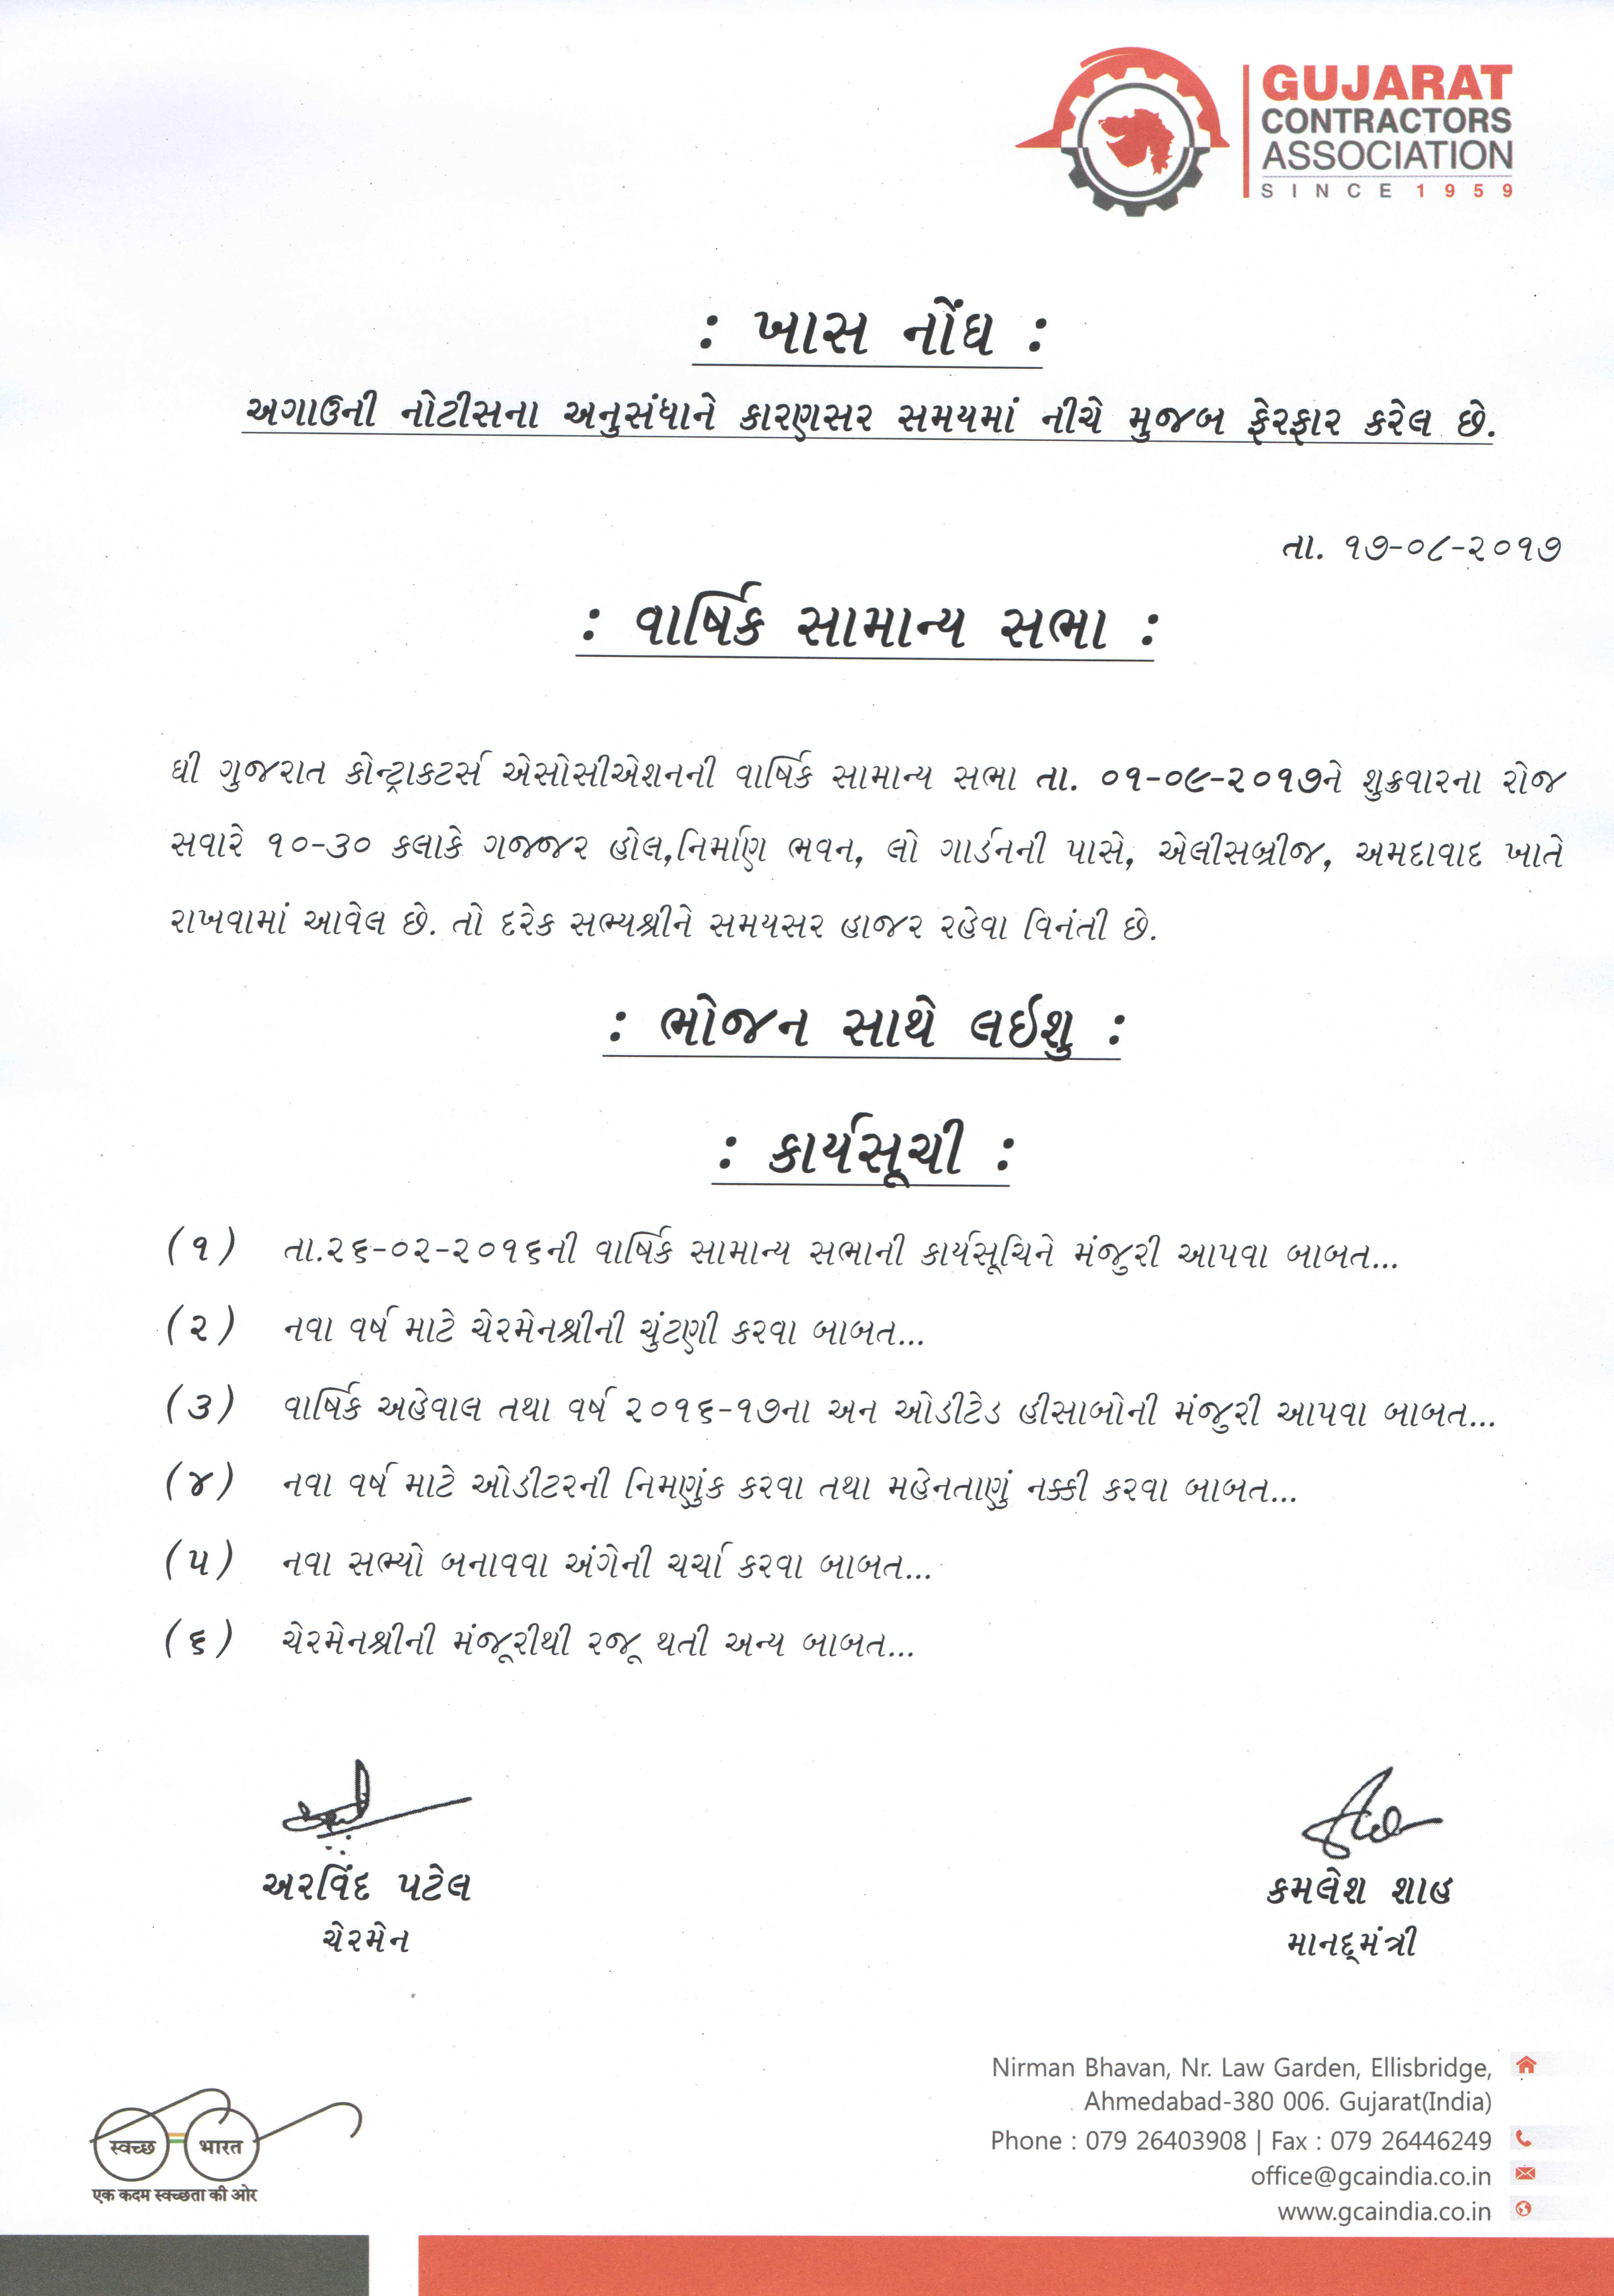 Gujarat Contractors Association